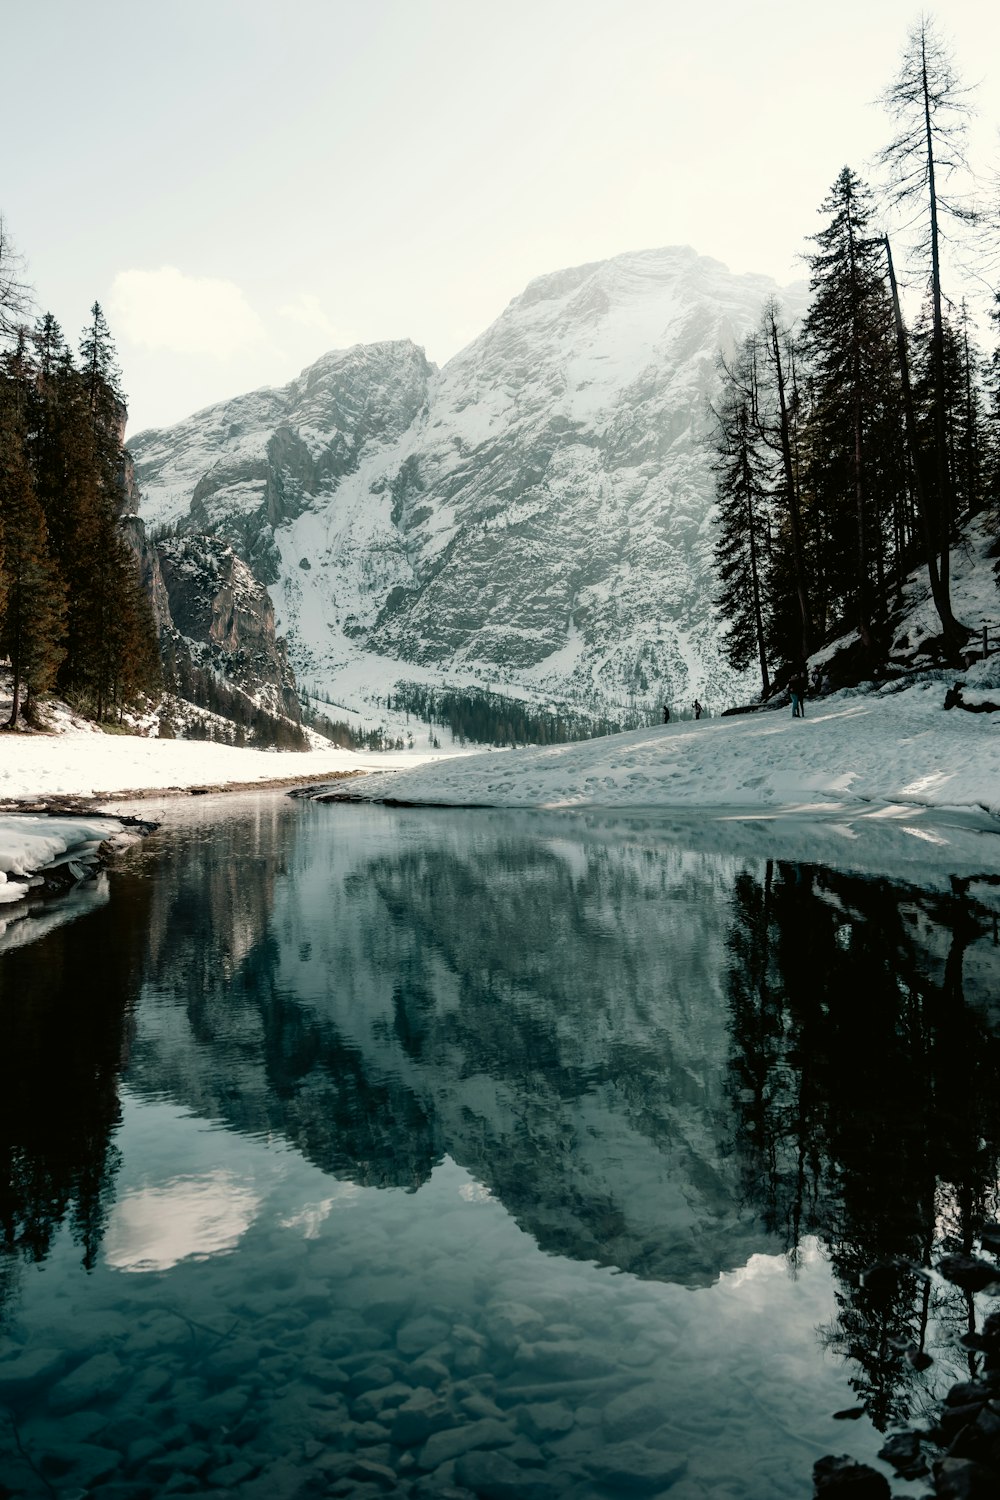 Ein See, umgeben von schneebedeckten Bergen und Bäumen